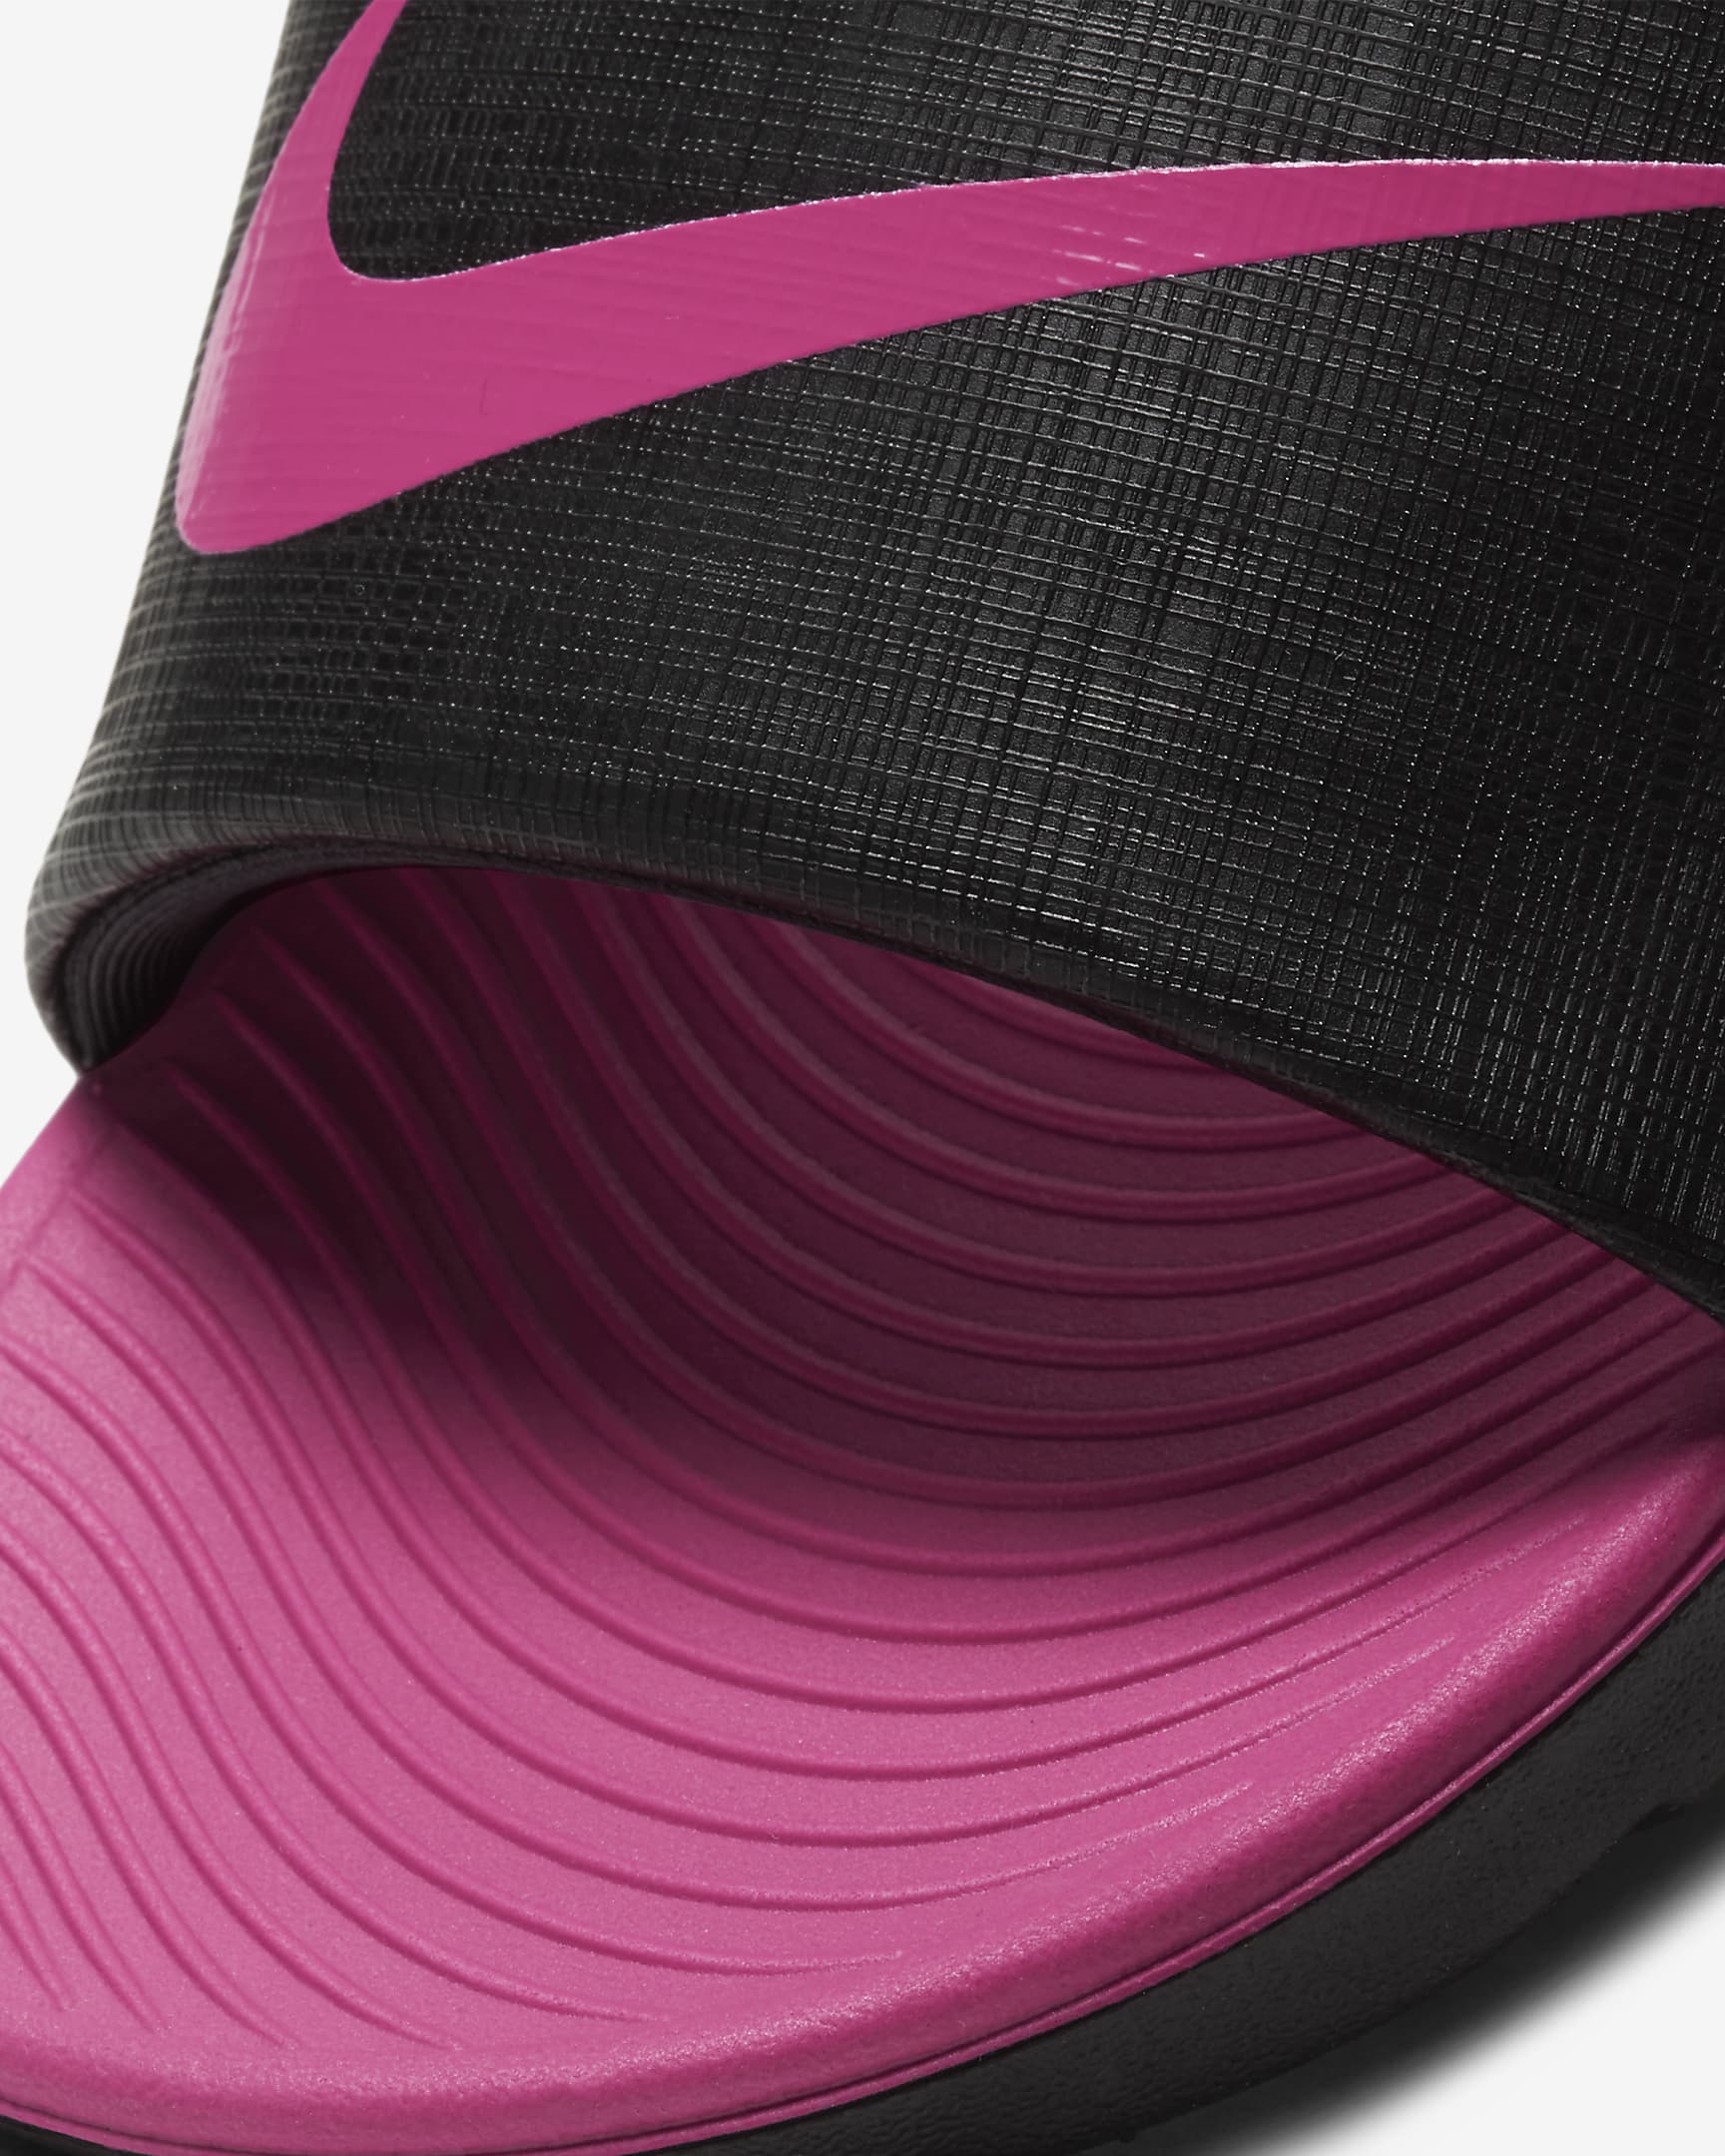 Nike Kawa papucs kisebb/nagyobb gyerekeknek - Fekete/Vivid Pink